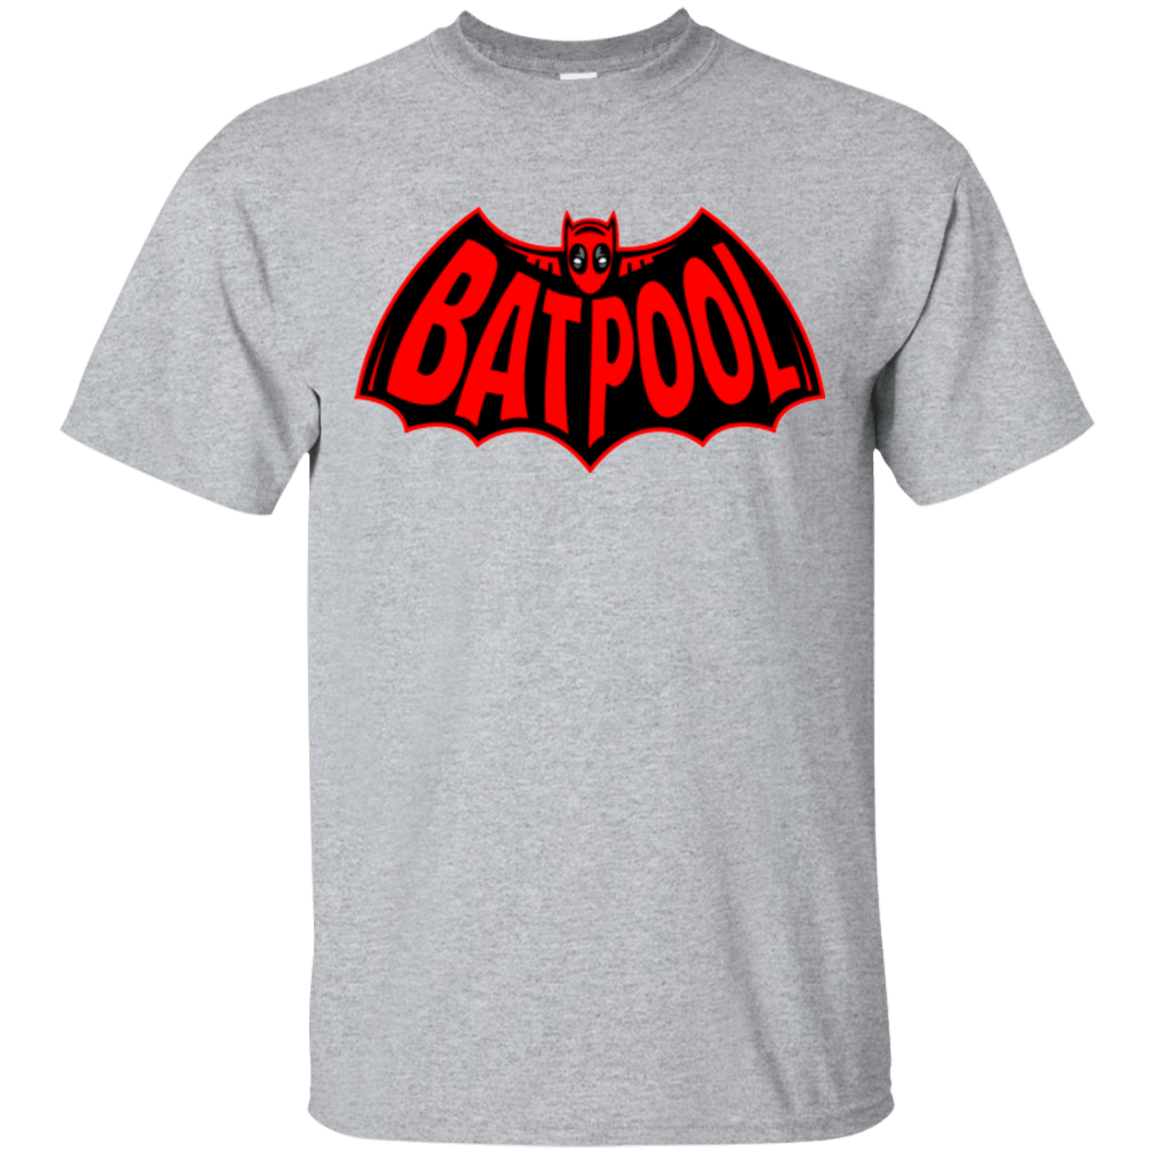 T-Shirts Sport Grey / Small Batpool T-Shirt